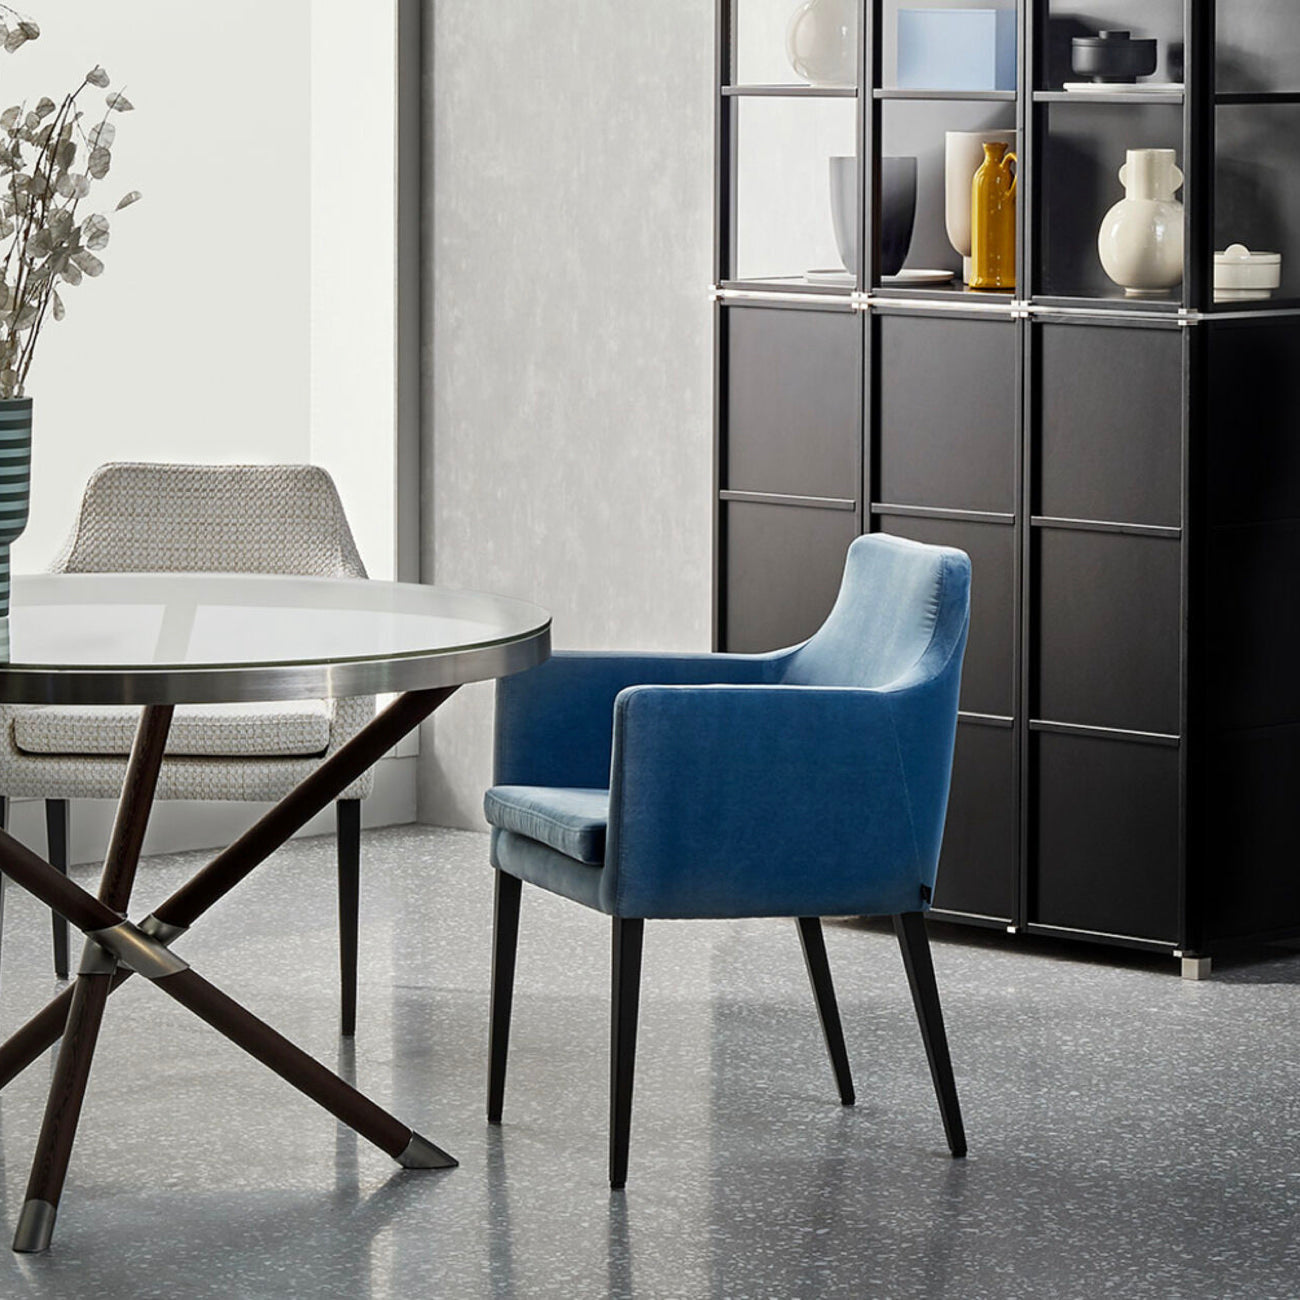 ALLEGRA chair by Christine Kröncke Interior Design